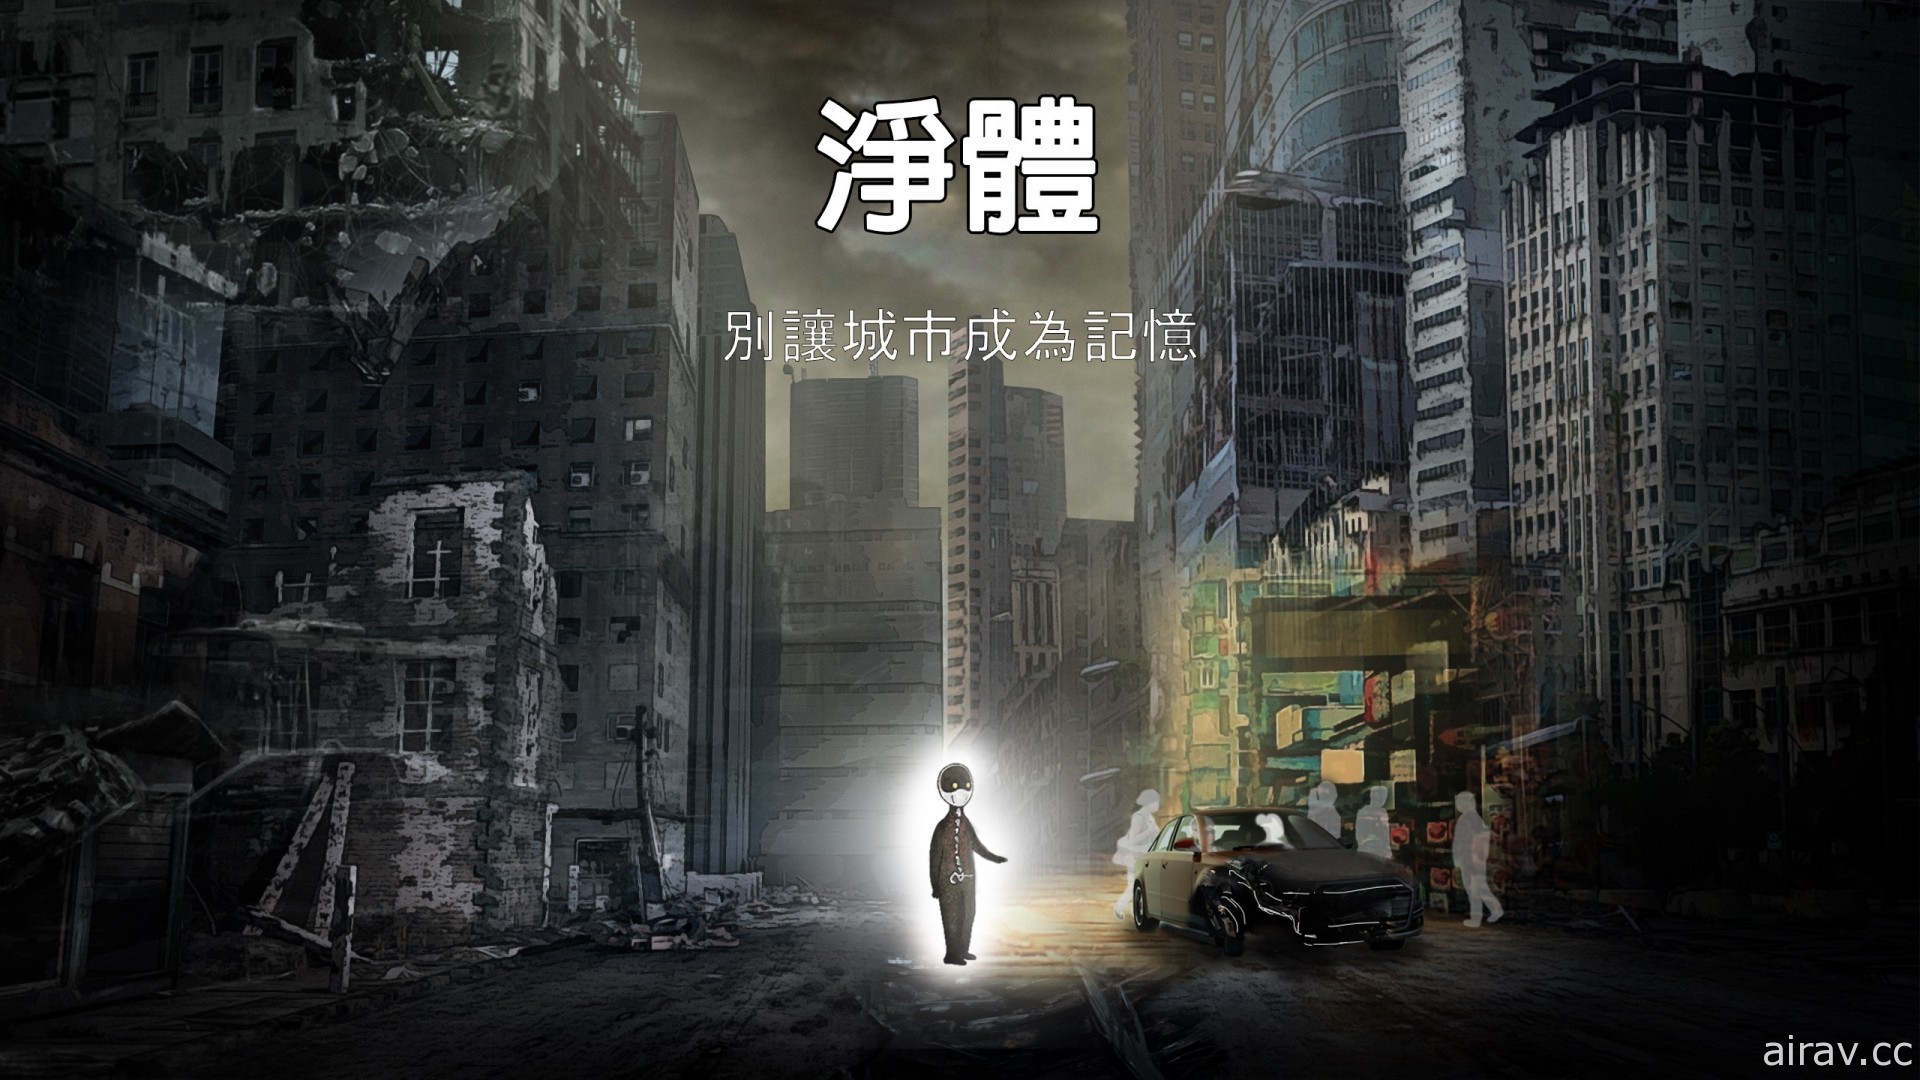 由香港开发者一人打造新作《净体》7 月展开募资 重审城市沦亡的经过